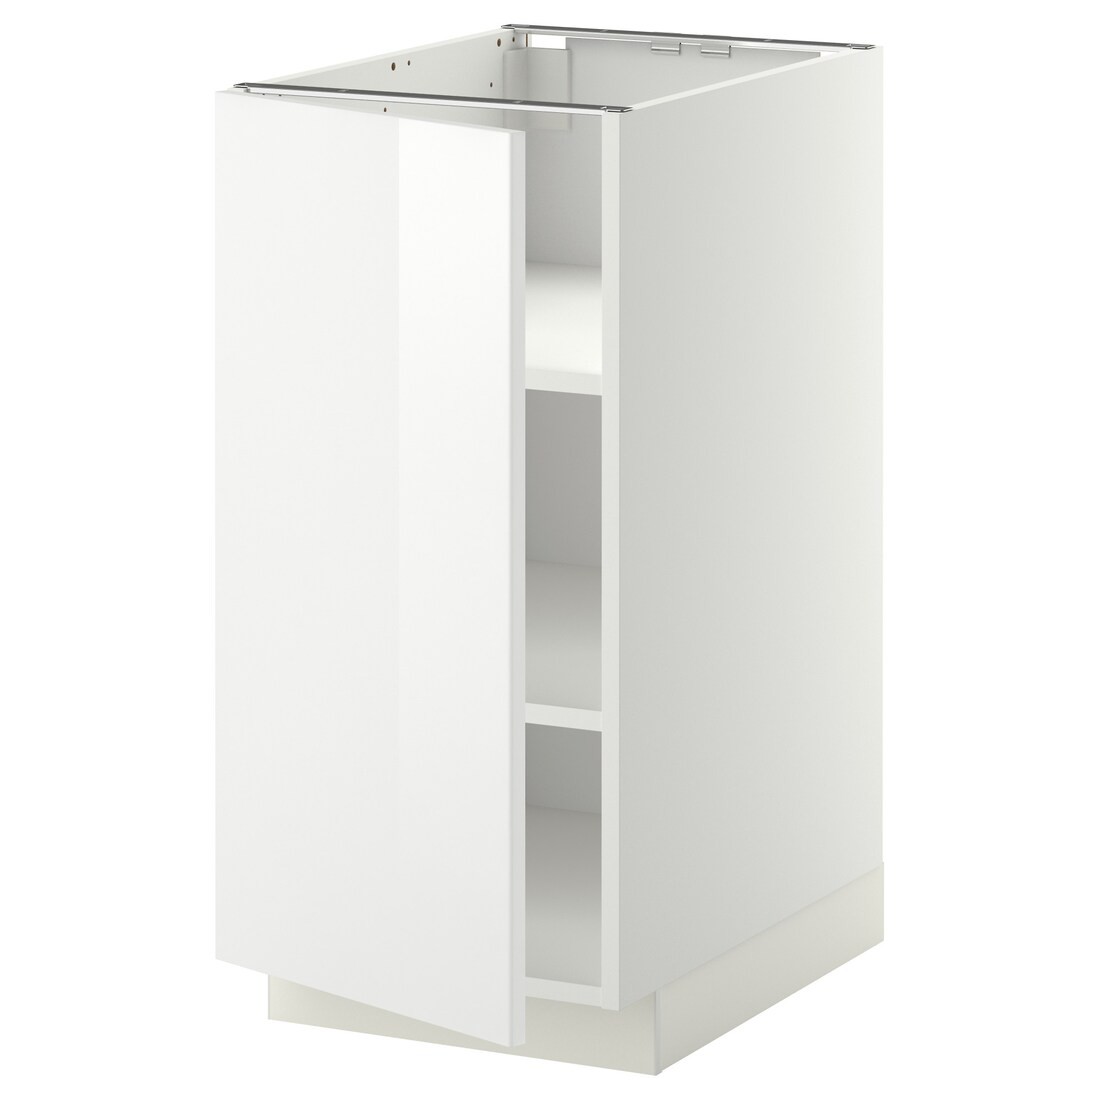 IKEA METOD МЕТОД Напольный шкаф с полками, белый / Ringhult белый, 40x60 см 69467821 694.678.21